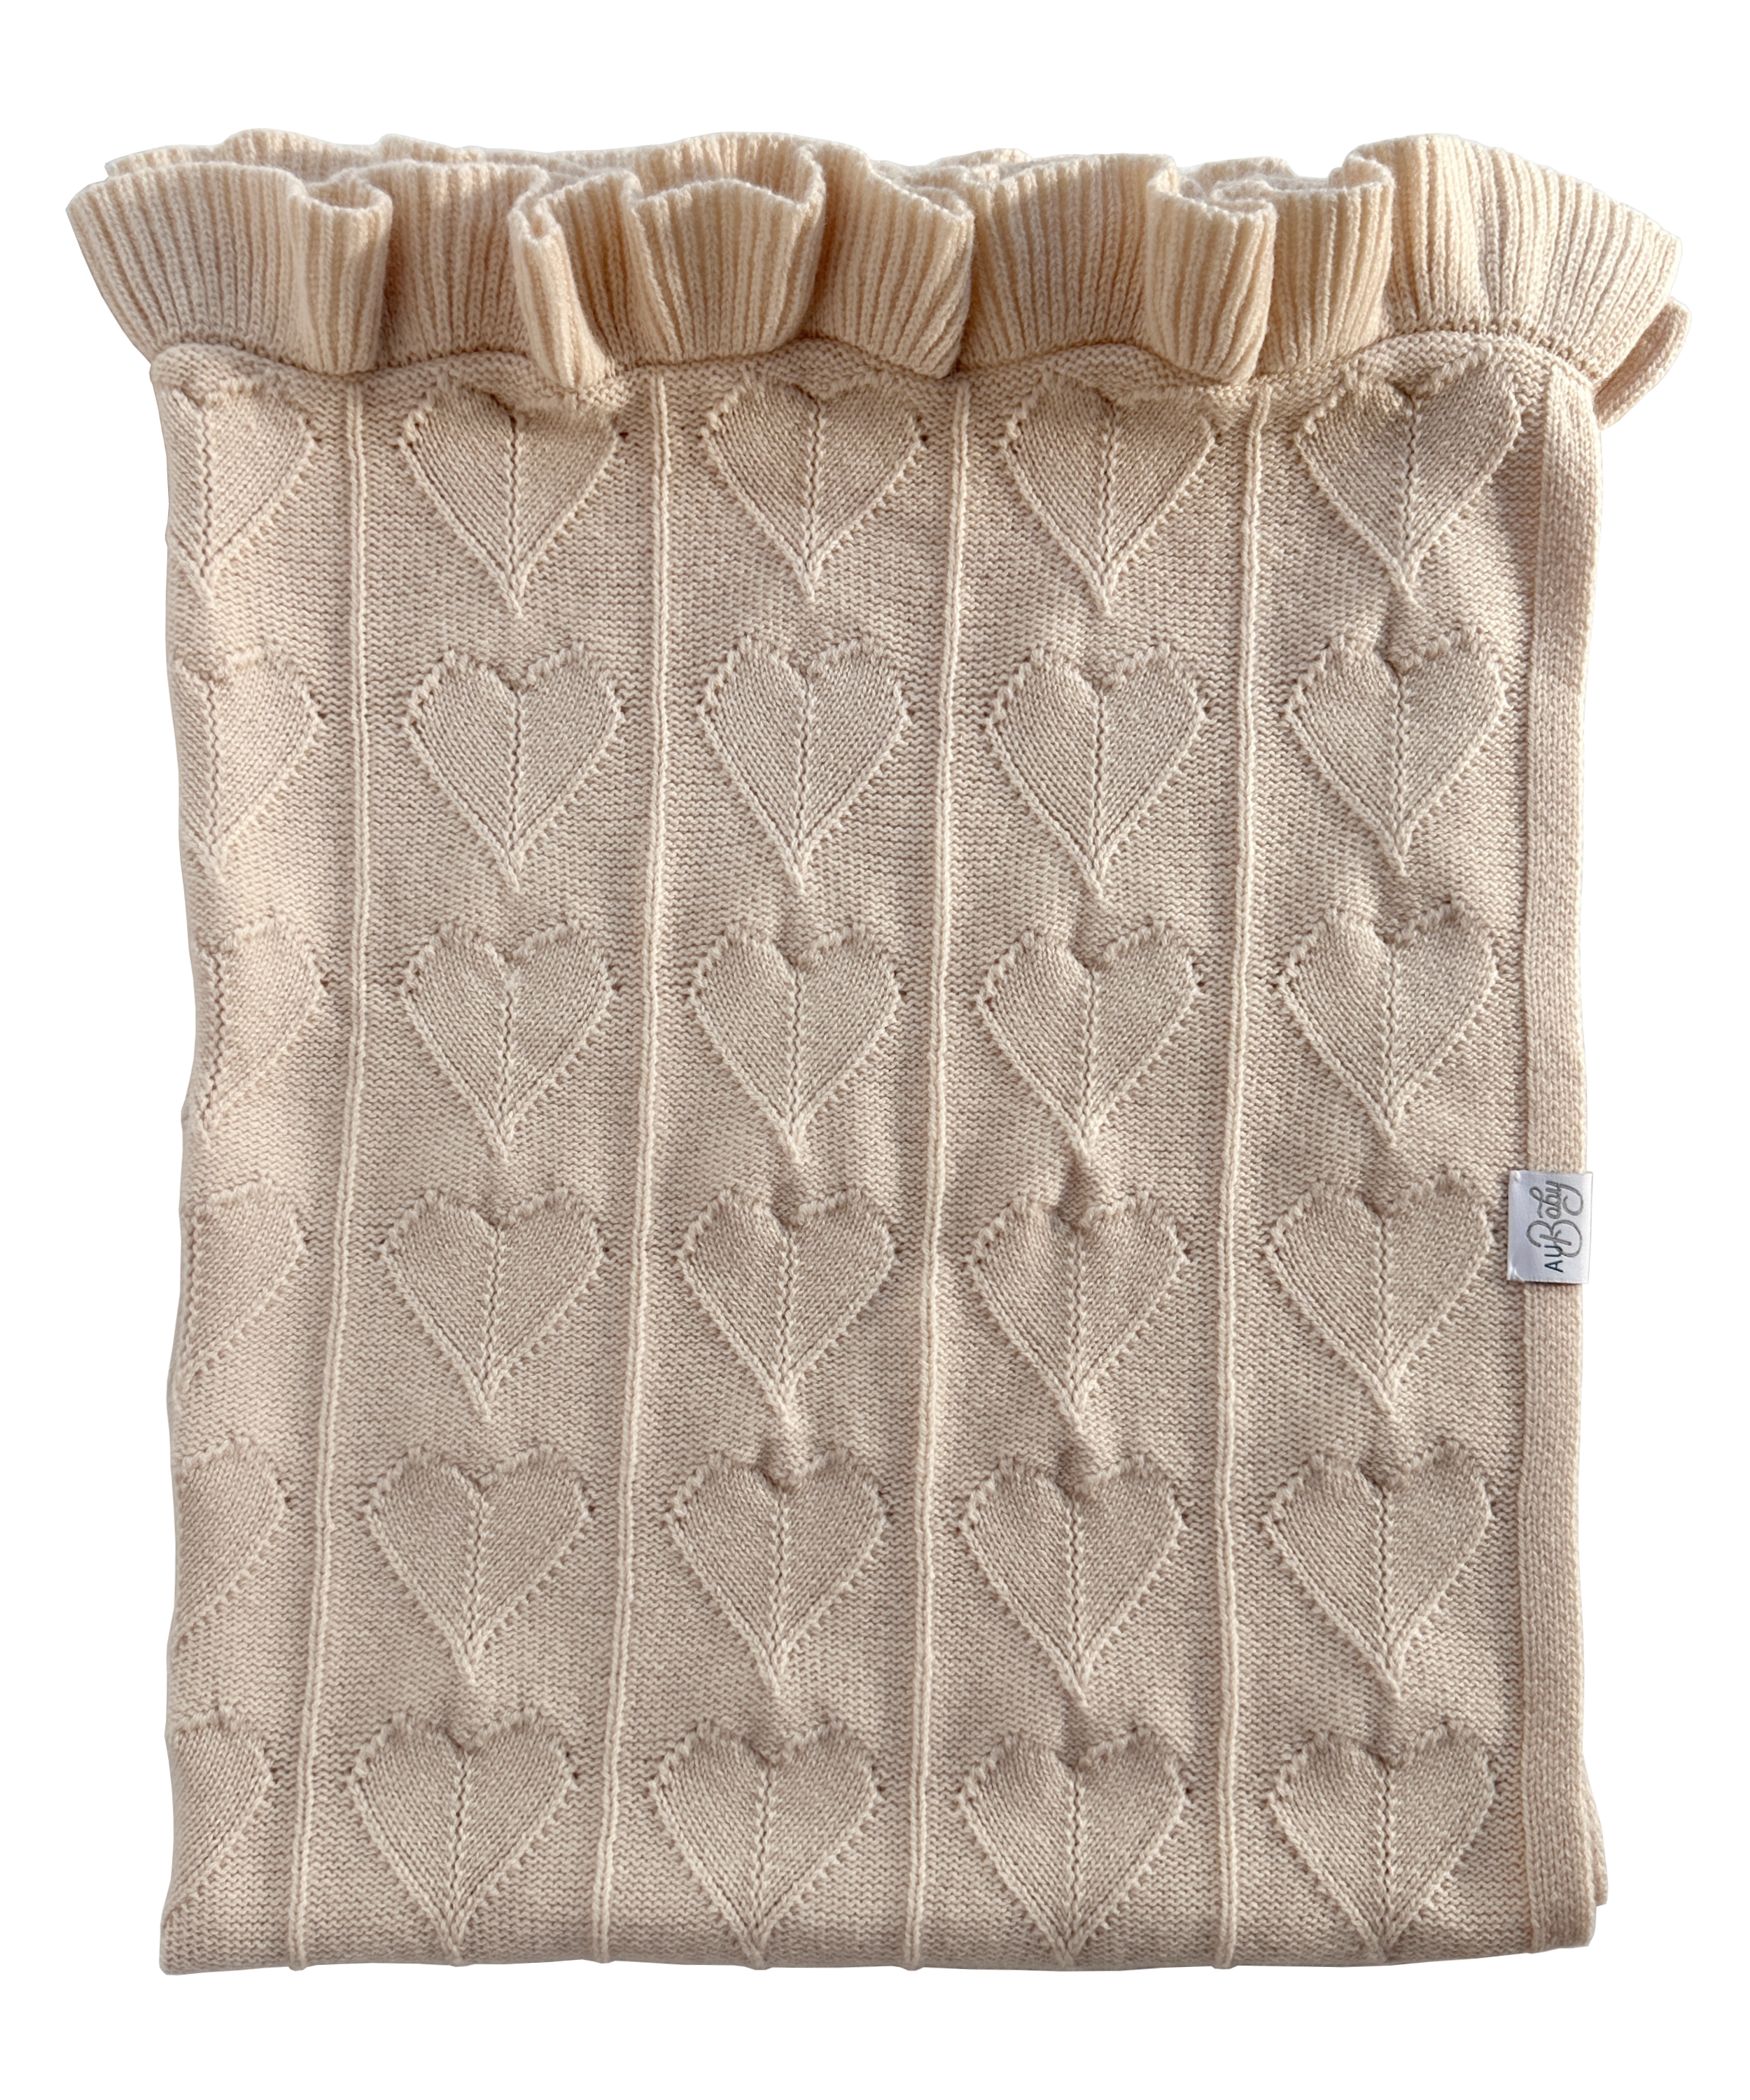 Organic cashmere merino luxury baby blanket.